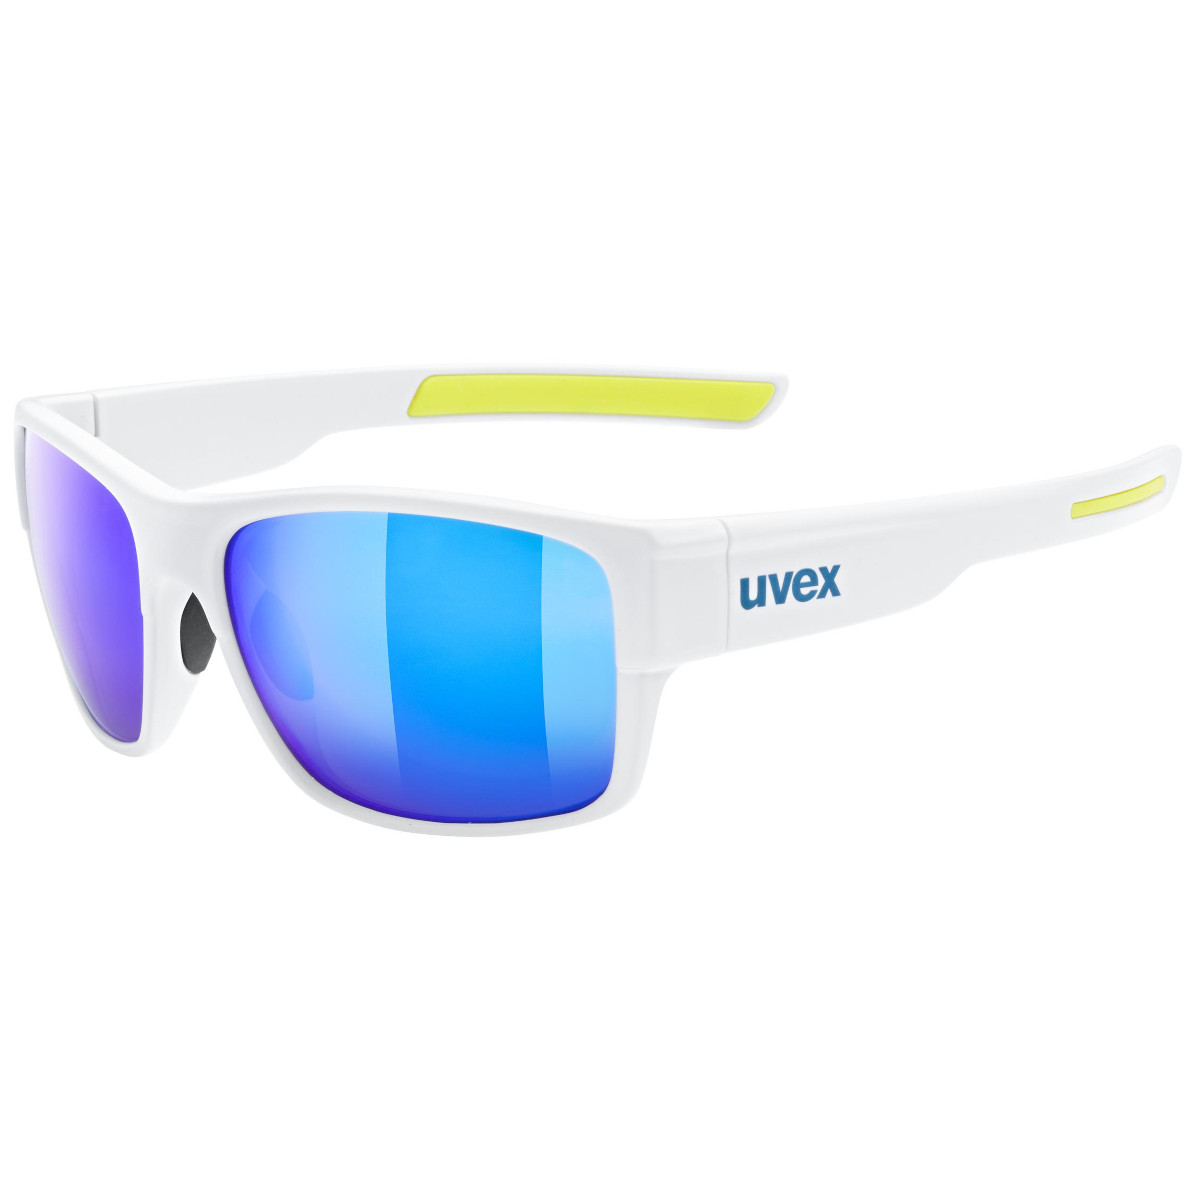 Produktbild von Uvex esntl urban Brille - white matt/mirror blue